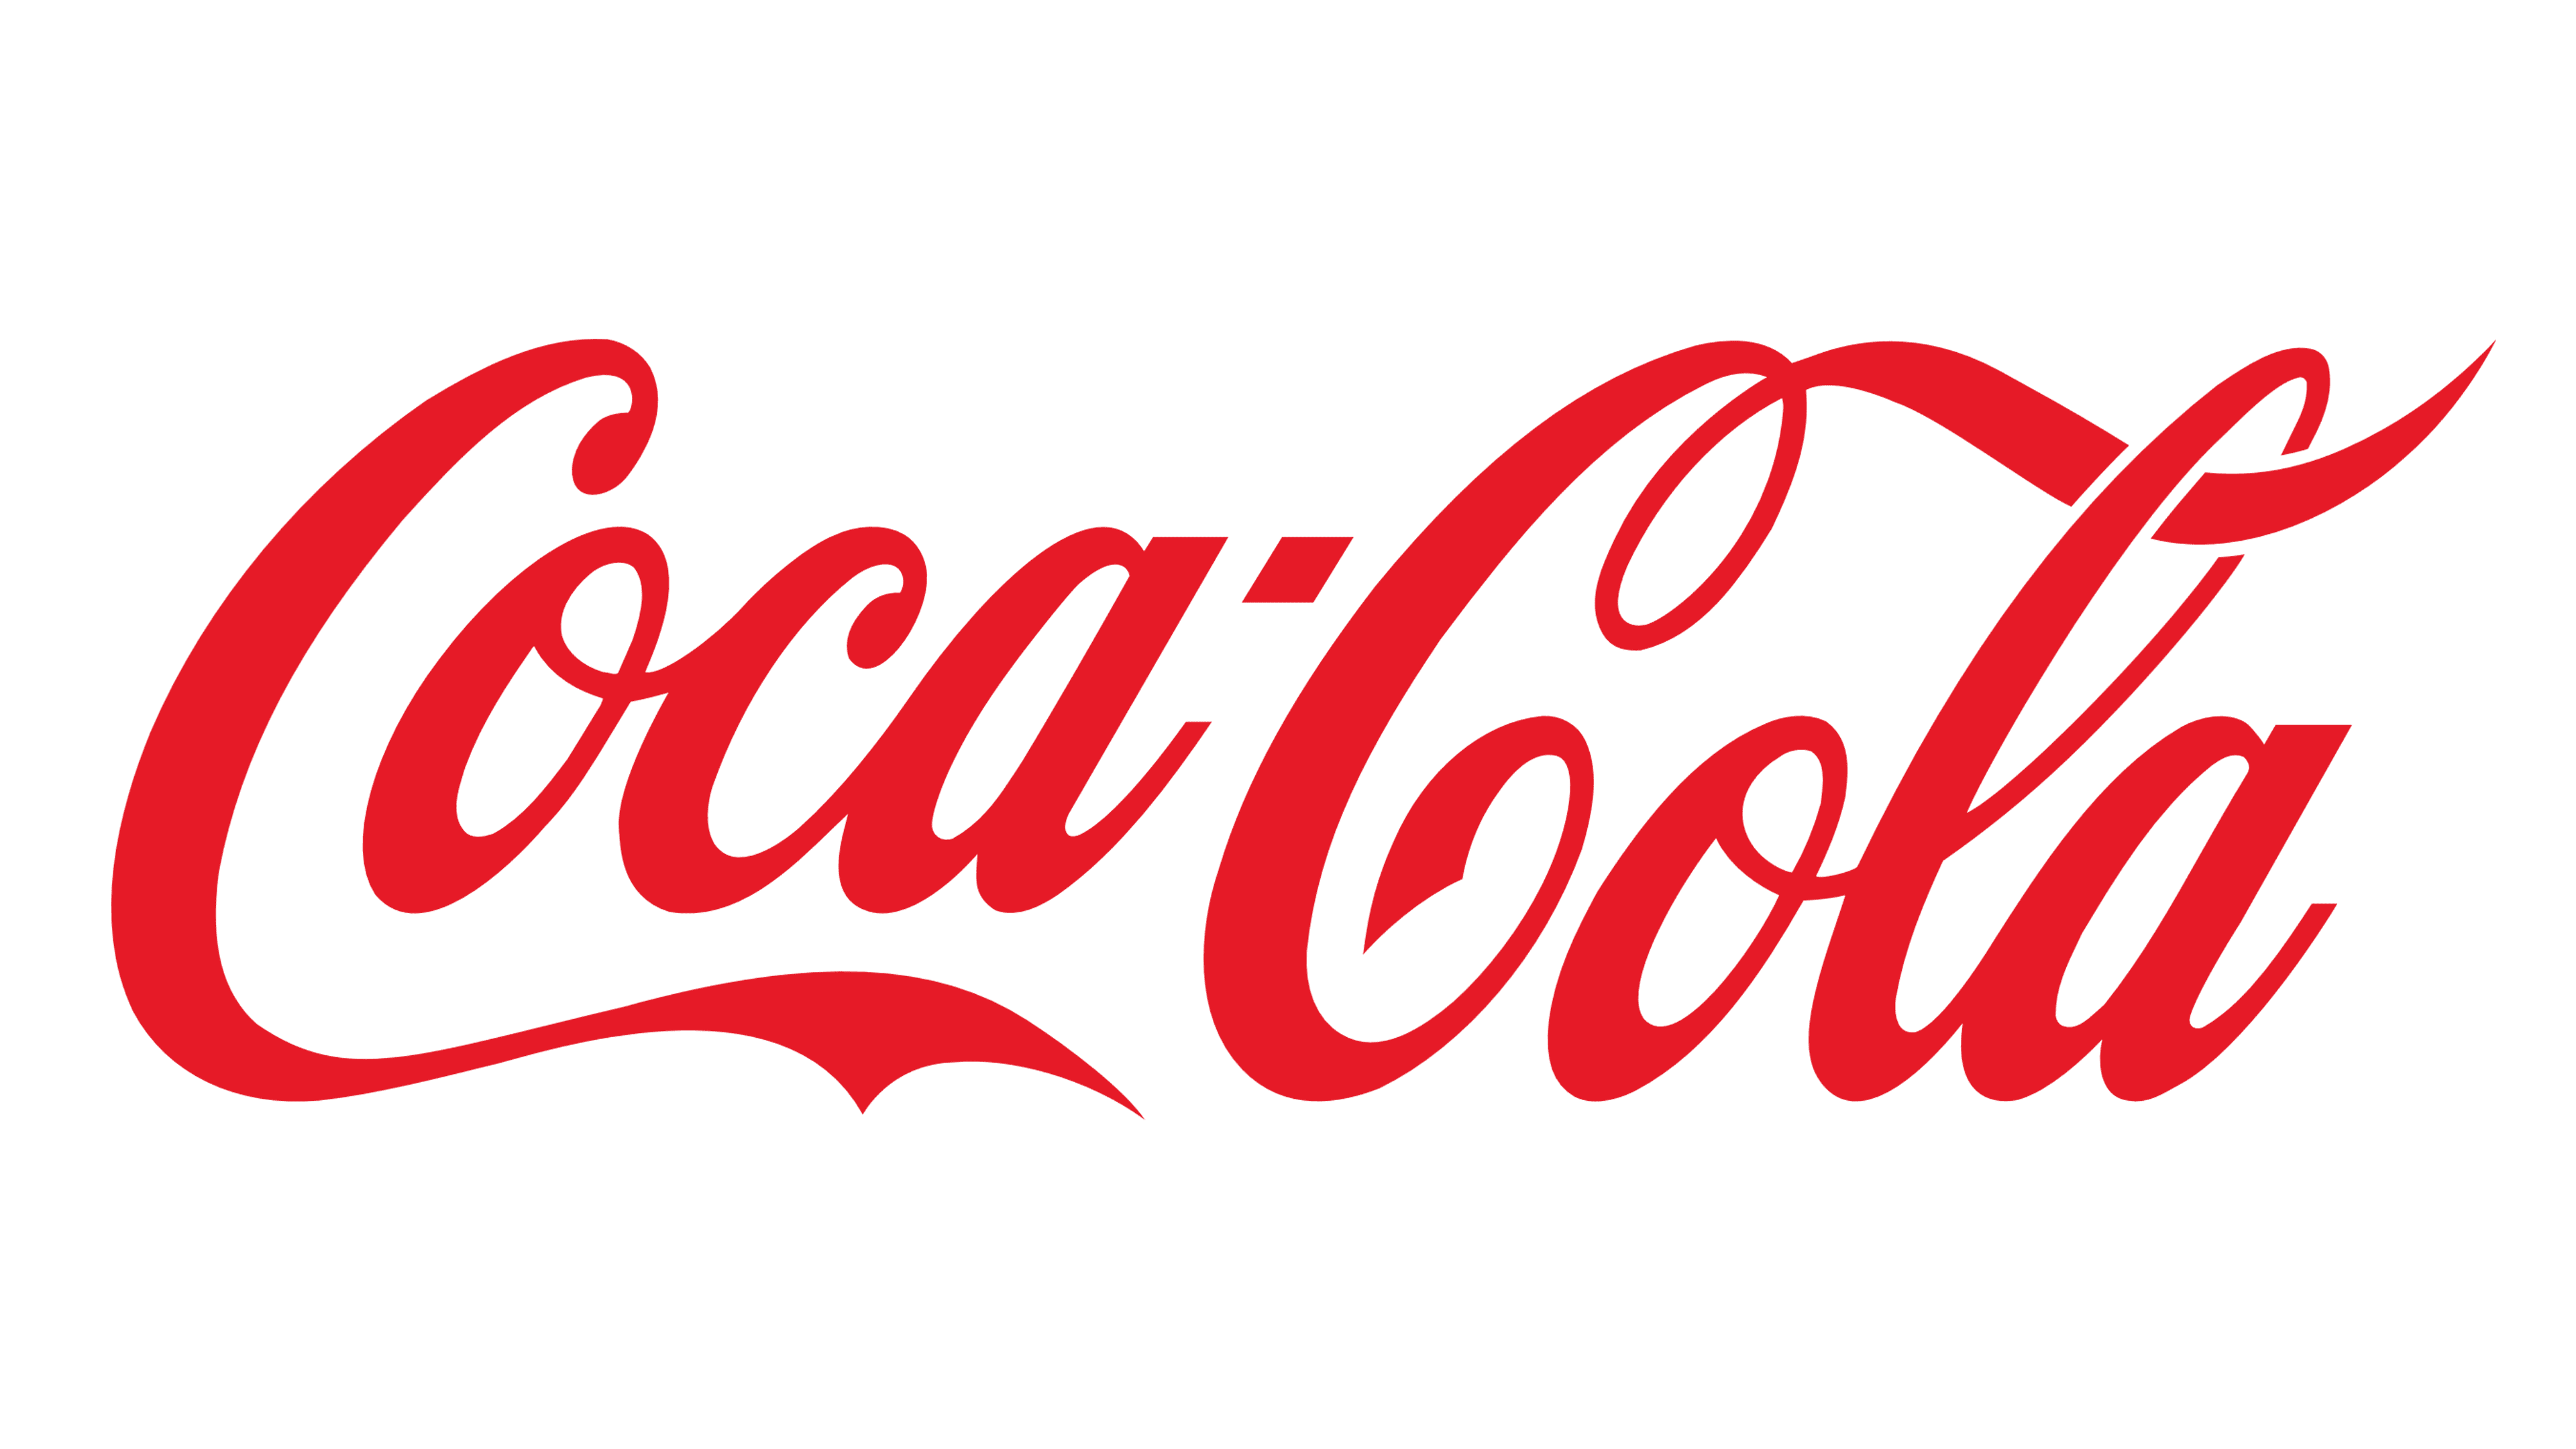 https://growthzonesitesprod.azureedge.net/wp-content/uploads/sites/3216/2022/12/Coca-Cola-logo.png